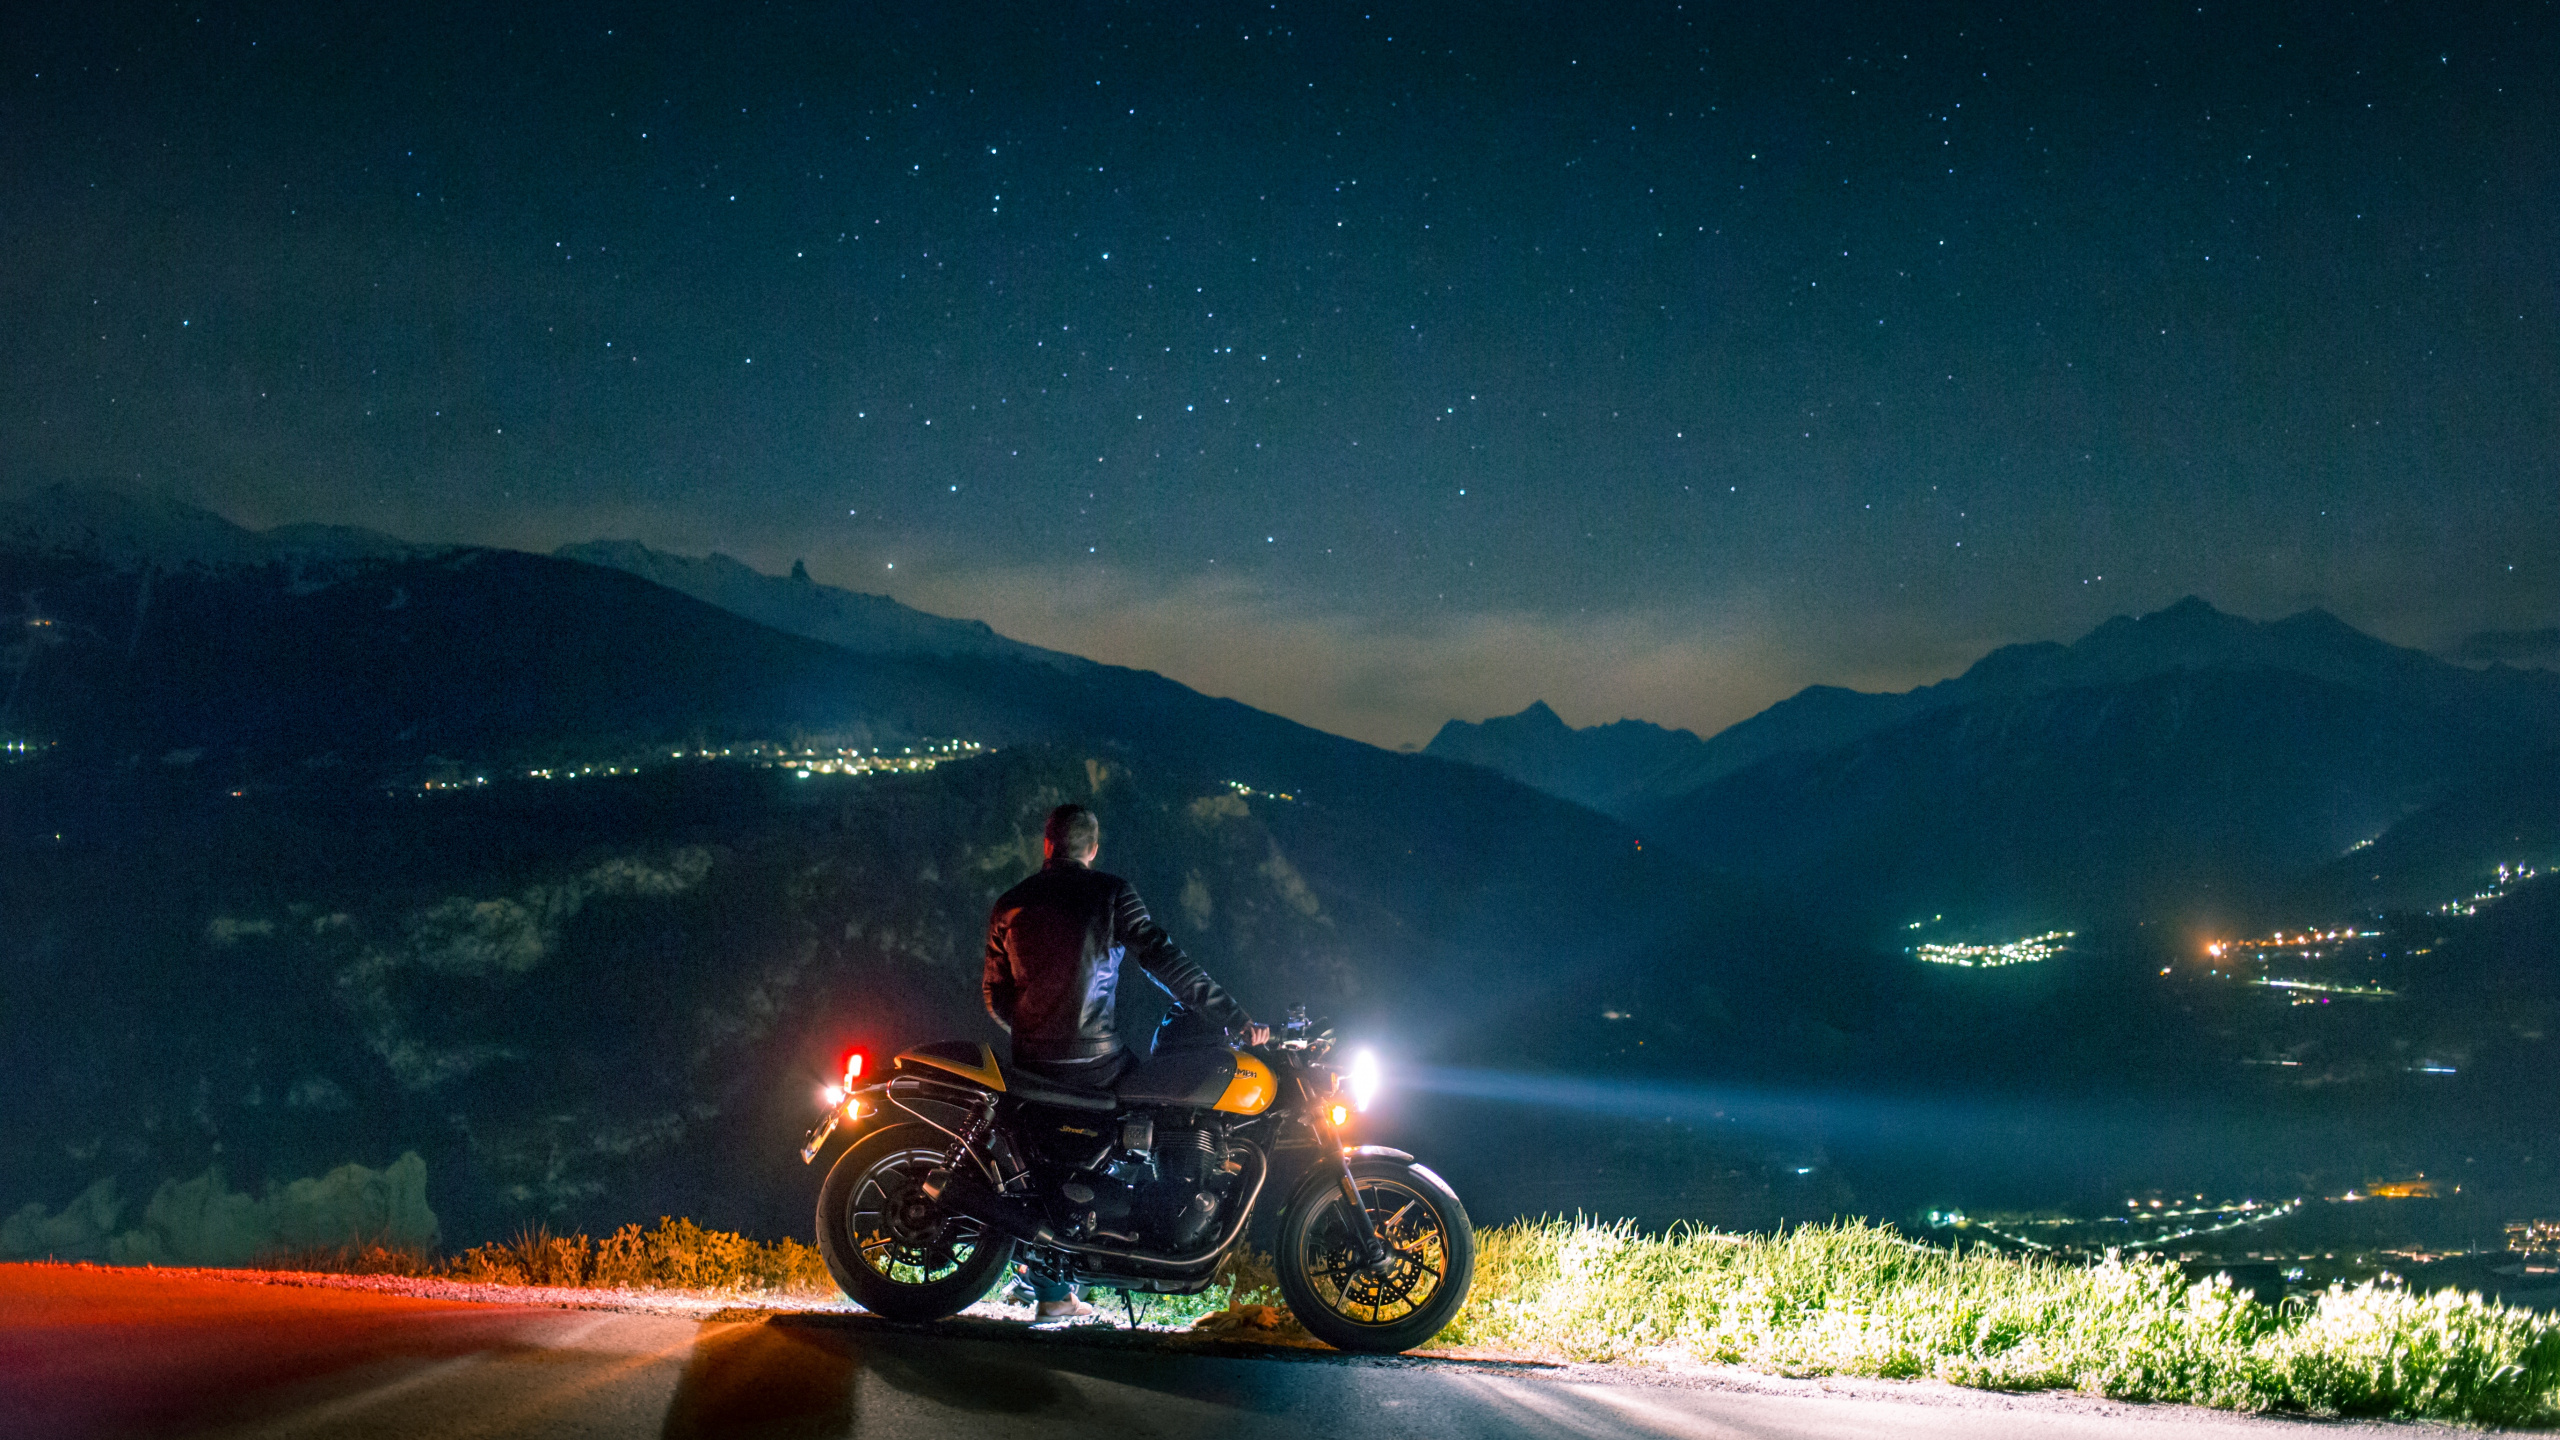 Mann, Der Nachts Motorrad Auf Der Straße Fährt. Wallpaper in 2560x1440 Resolution